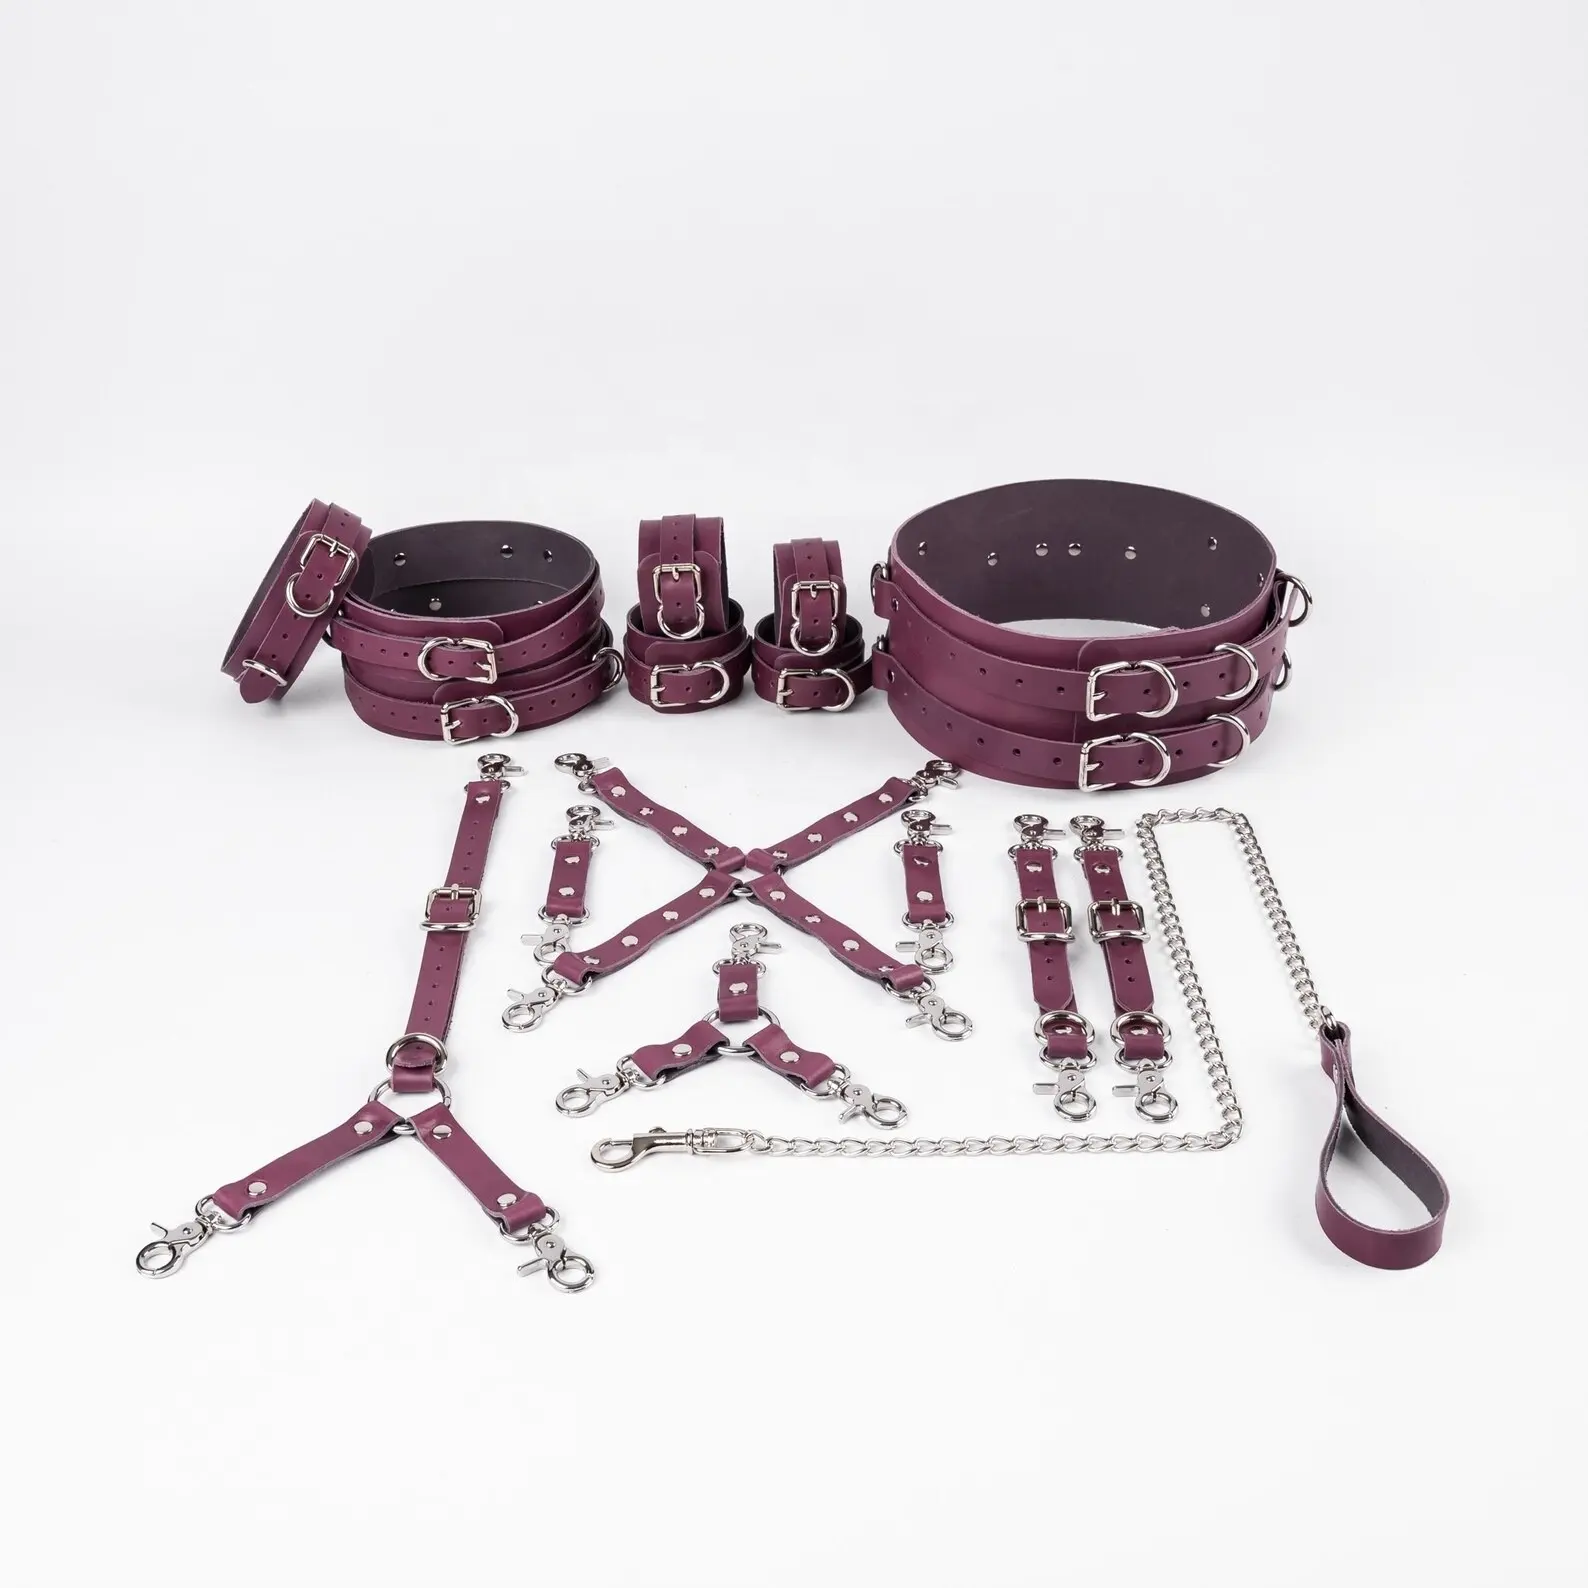 طقم أدوات تقييد مكون من 16 قطعة من BDSM بألوان وأجهزة اختيارية مختلفة وحزام للخصر وأساور للفخذ جلد بقري حقيقي BDSM-0001